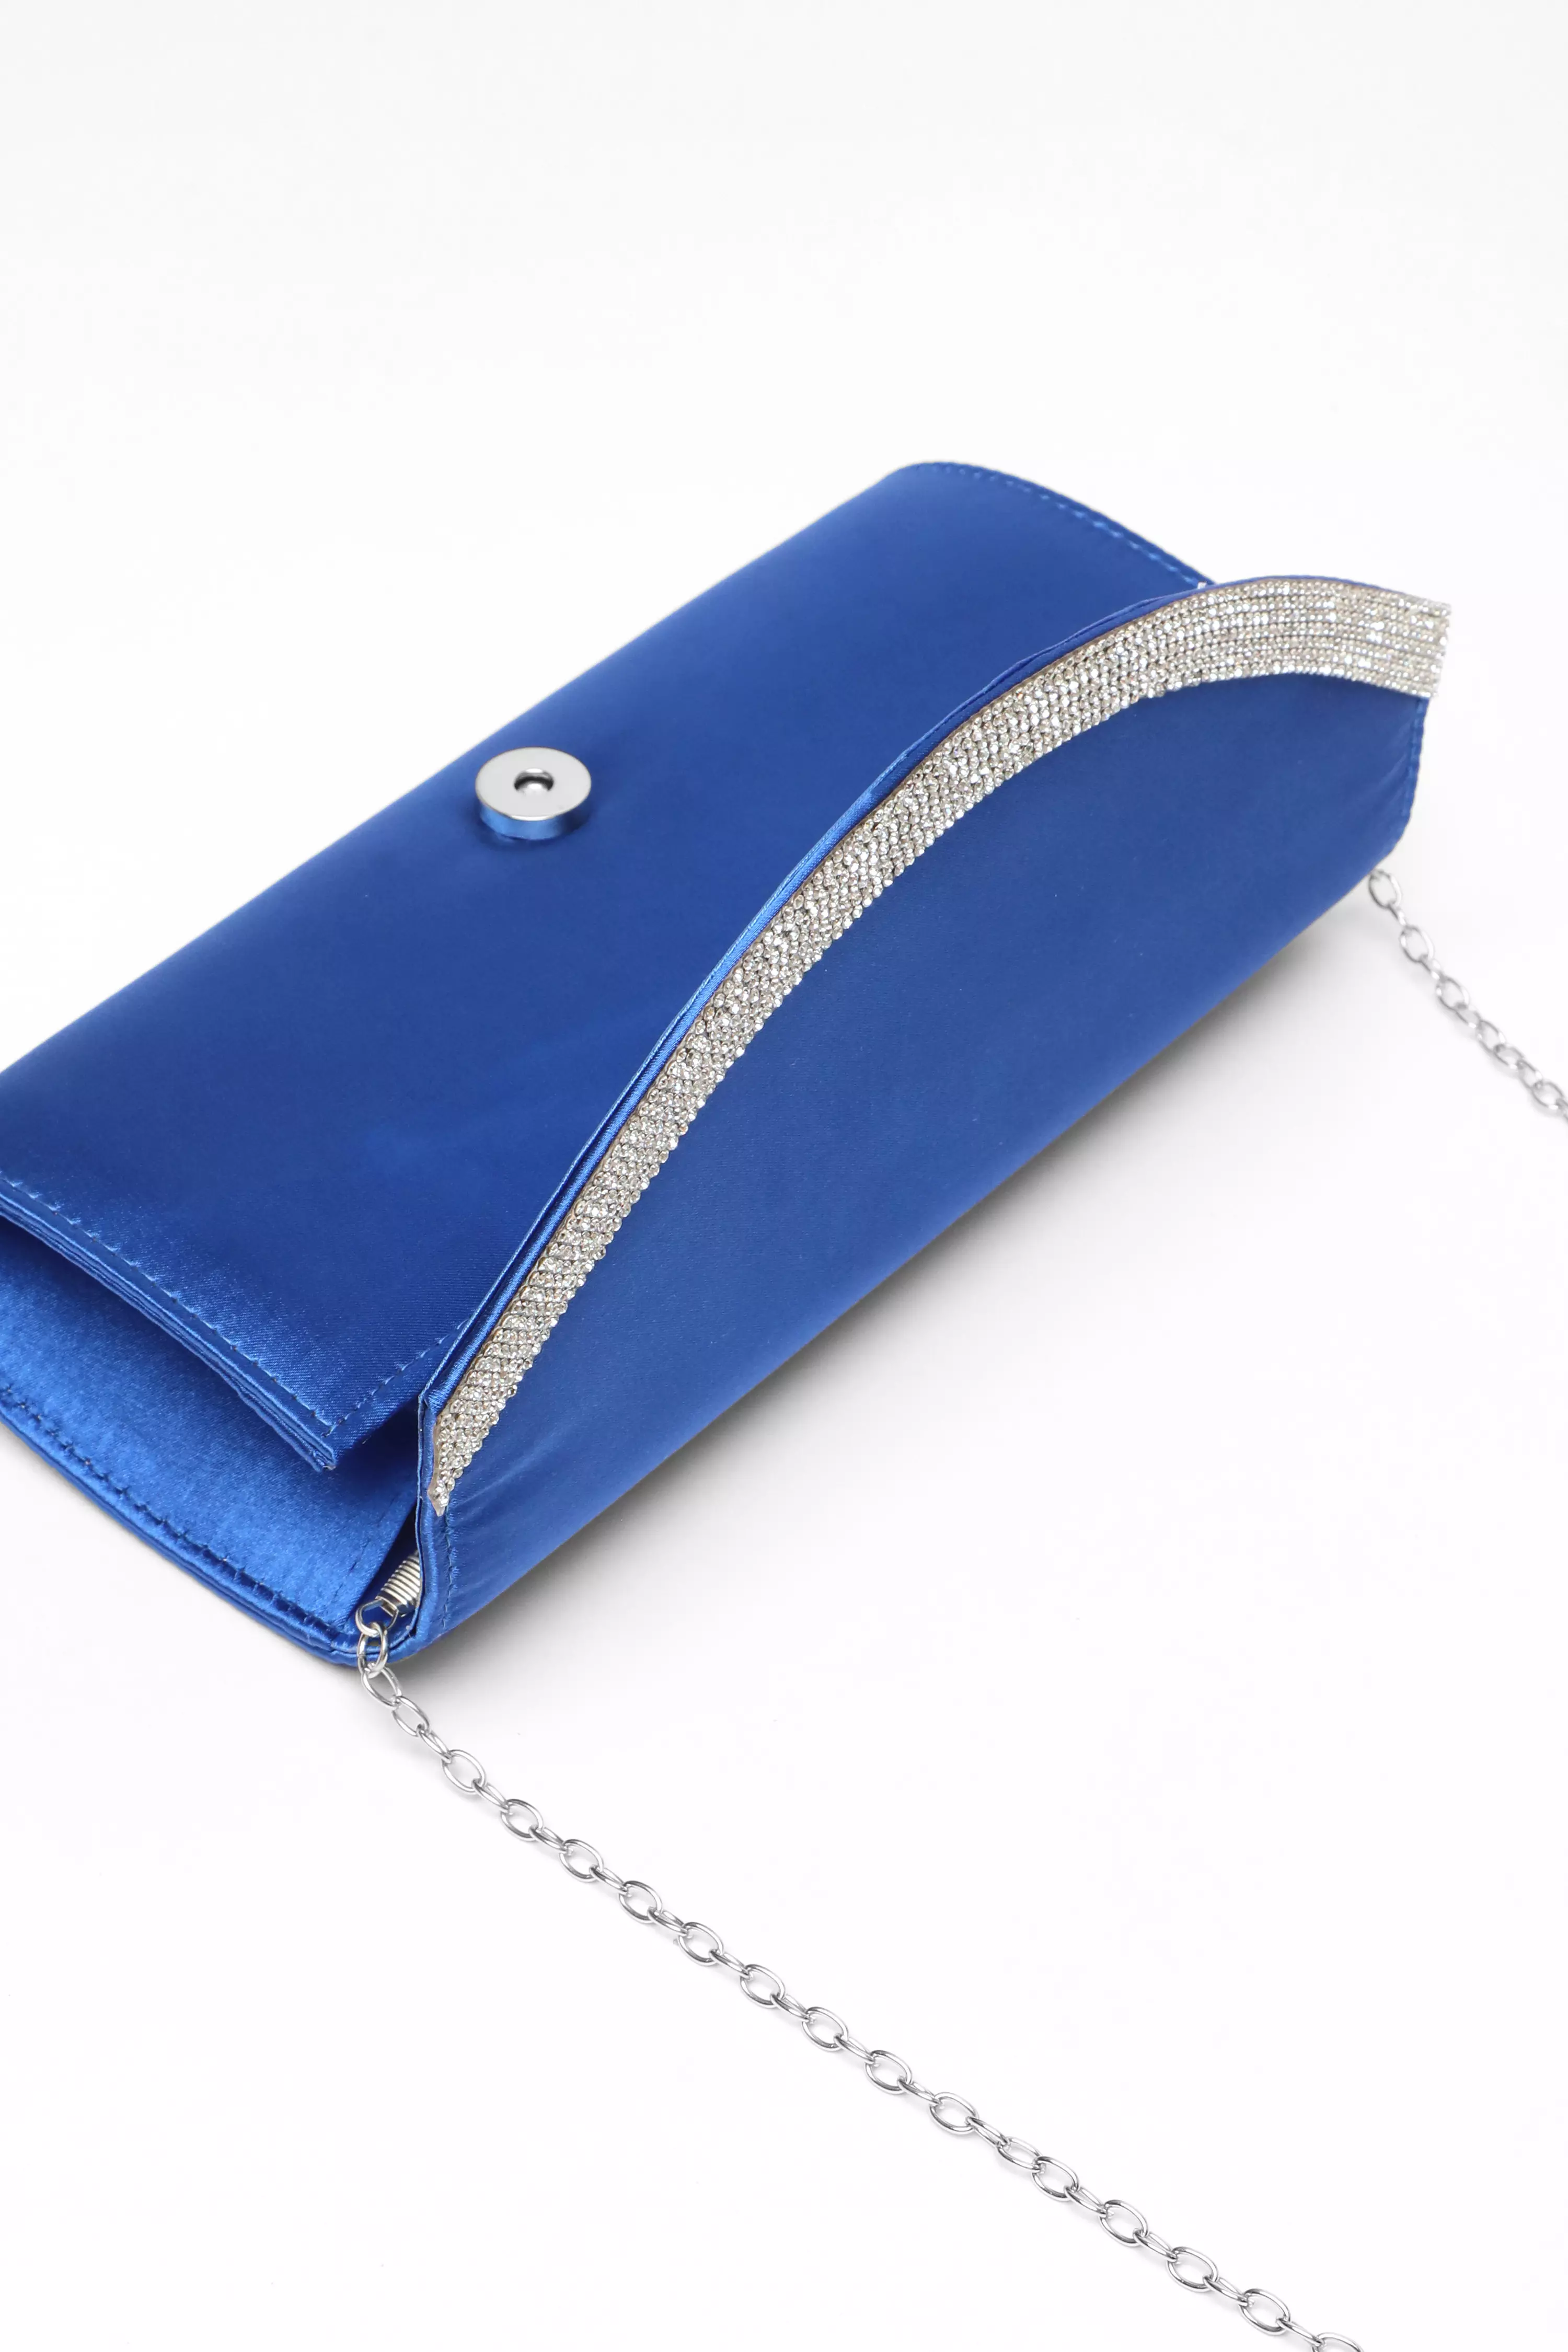 Royal Blue Satin Embellished Clutch Bag